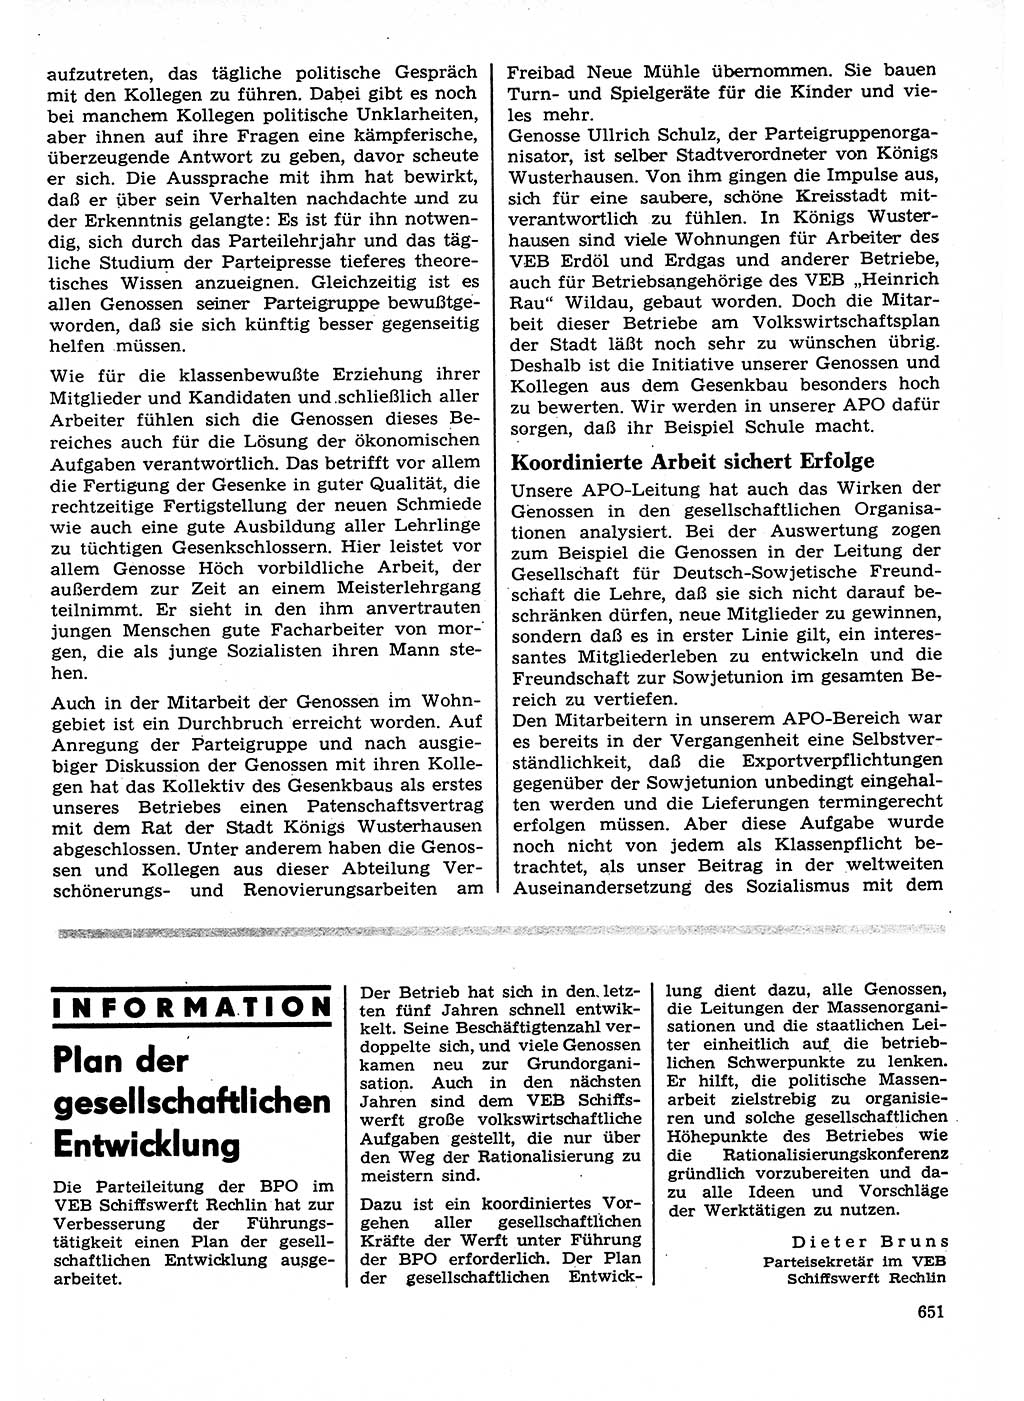 Neuer Weg (NW), Organ des Zentralkomitees (ZK) der SED (Sozialistische Einheitspartei Deutschlands) für Fragen des Parteilebens, 27. Jahrgang [Deutsche Demokratische Republik (DDR)] 1972, Seite 651 (NW ZK SED DDR 1972, S. 651)